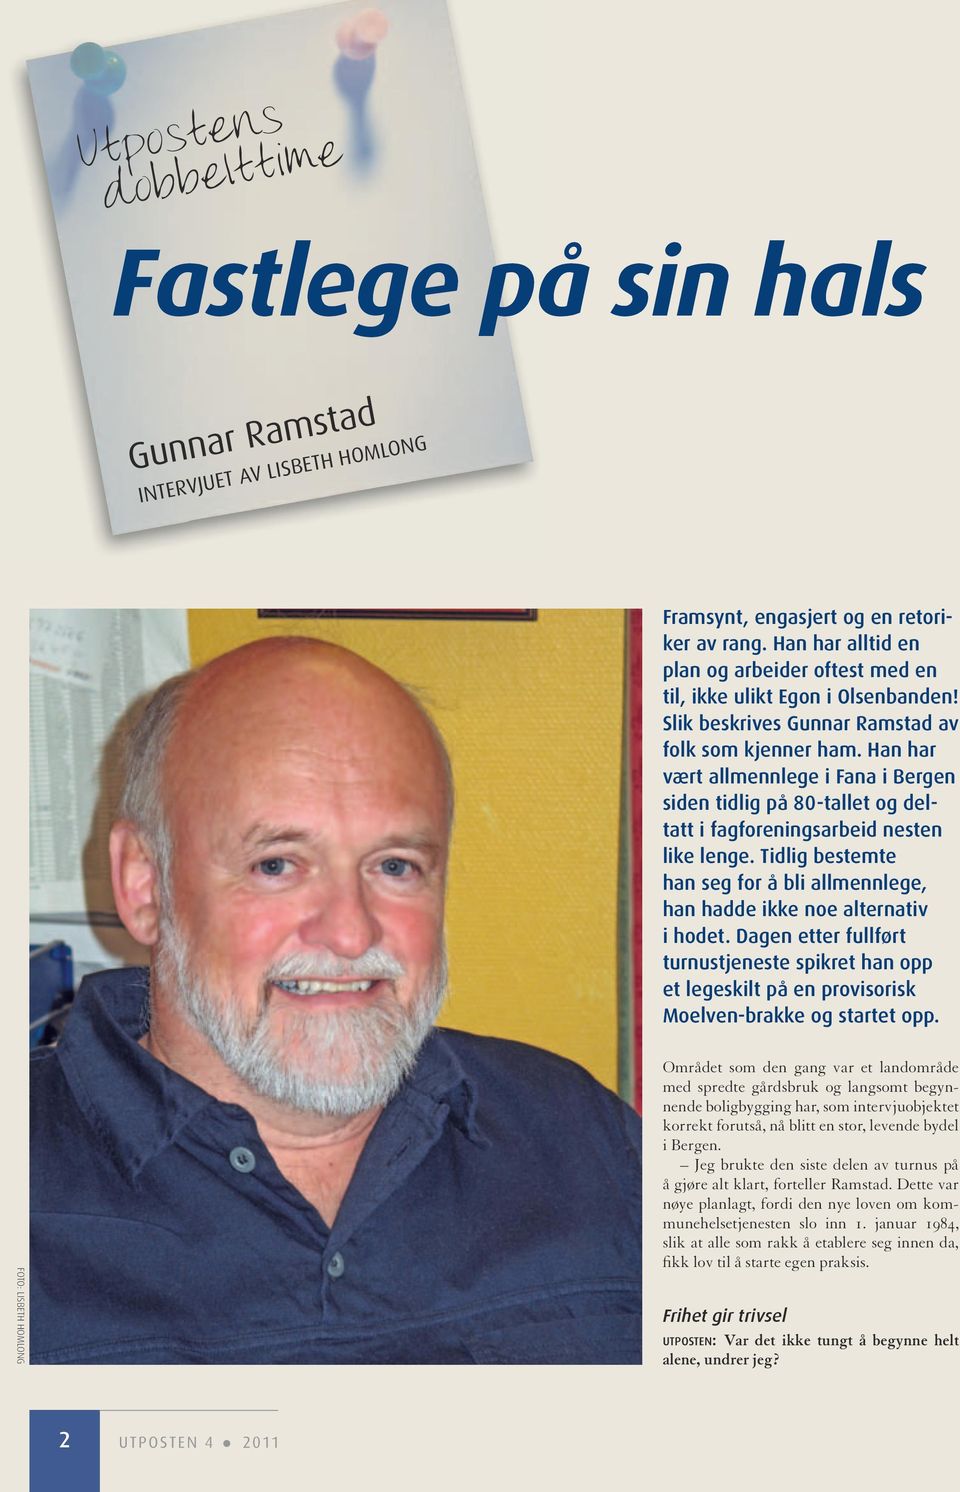 Han har vært allmennlege i Fana i Bergen siden tidlig på 80-tallet og deltatt i fagforeningsarbeid nesten like lenge.